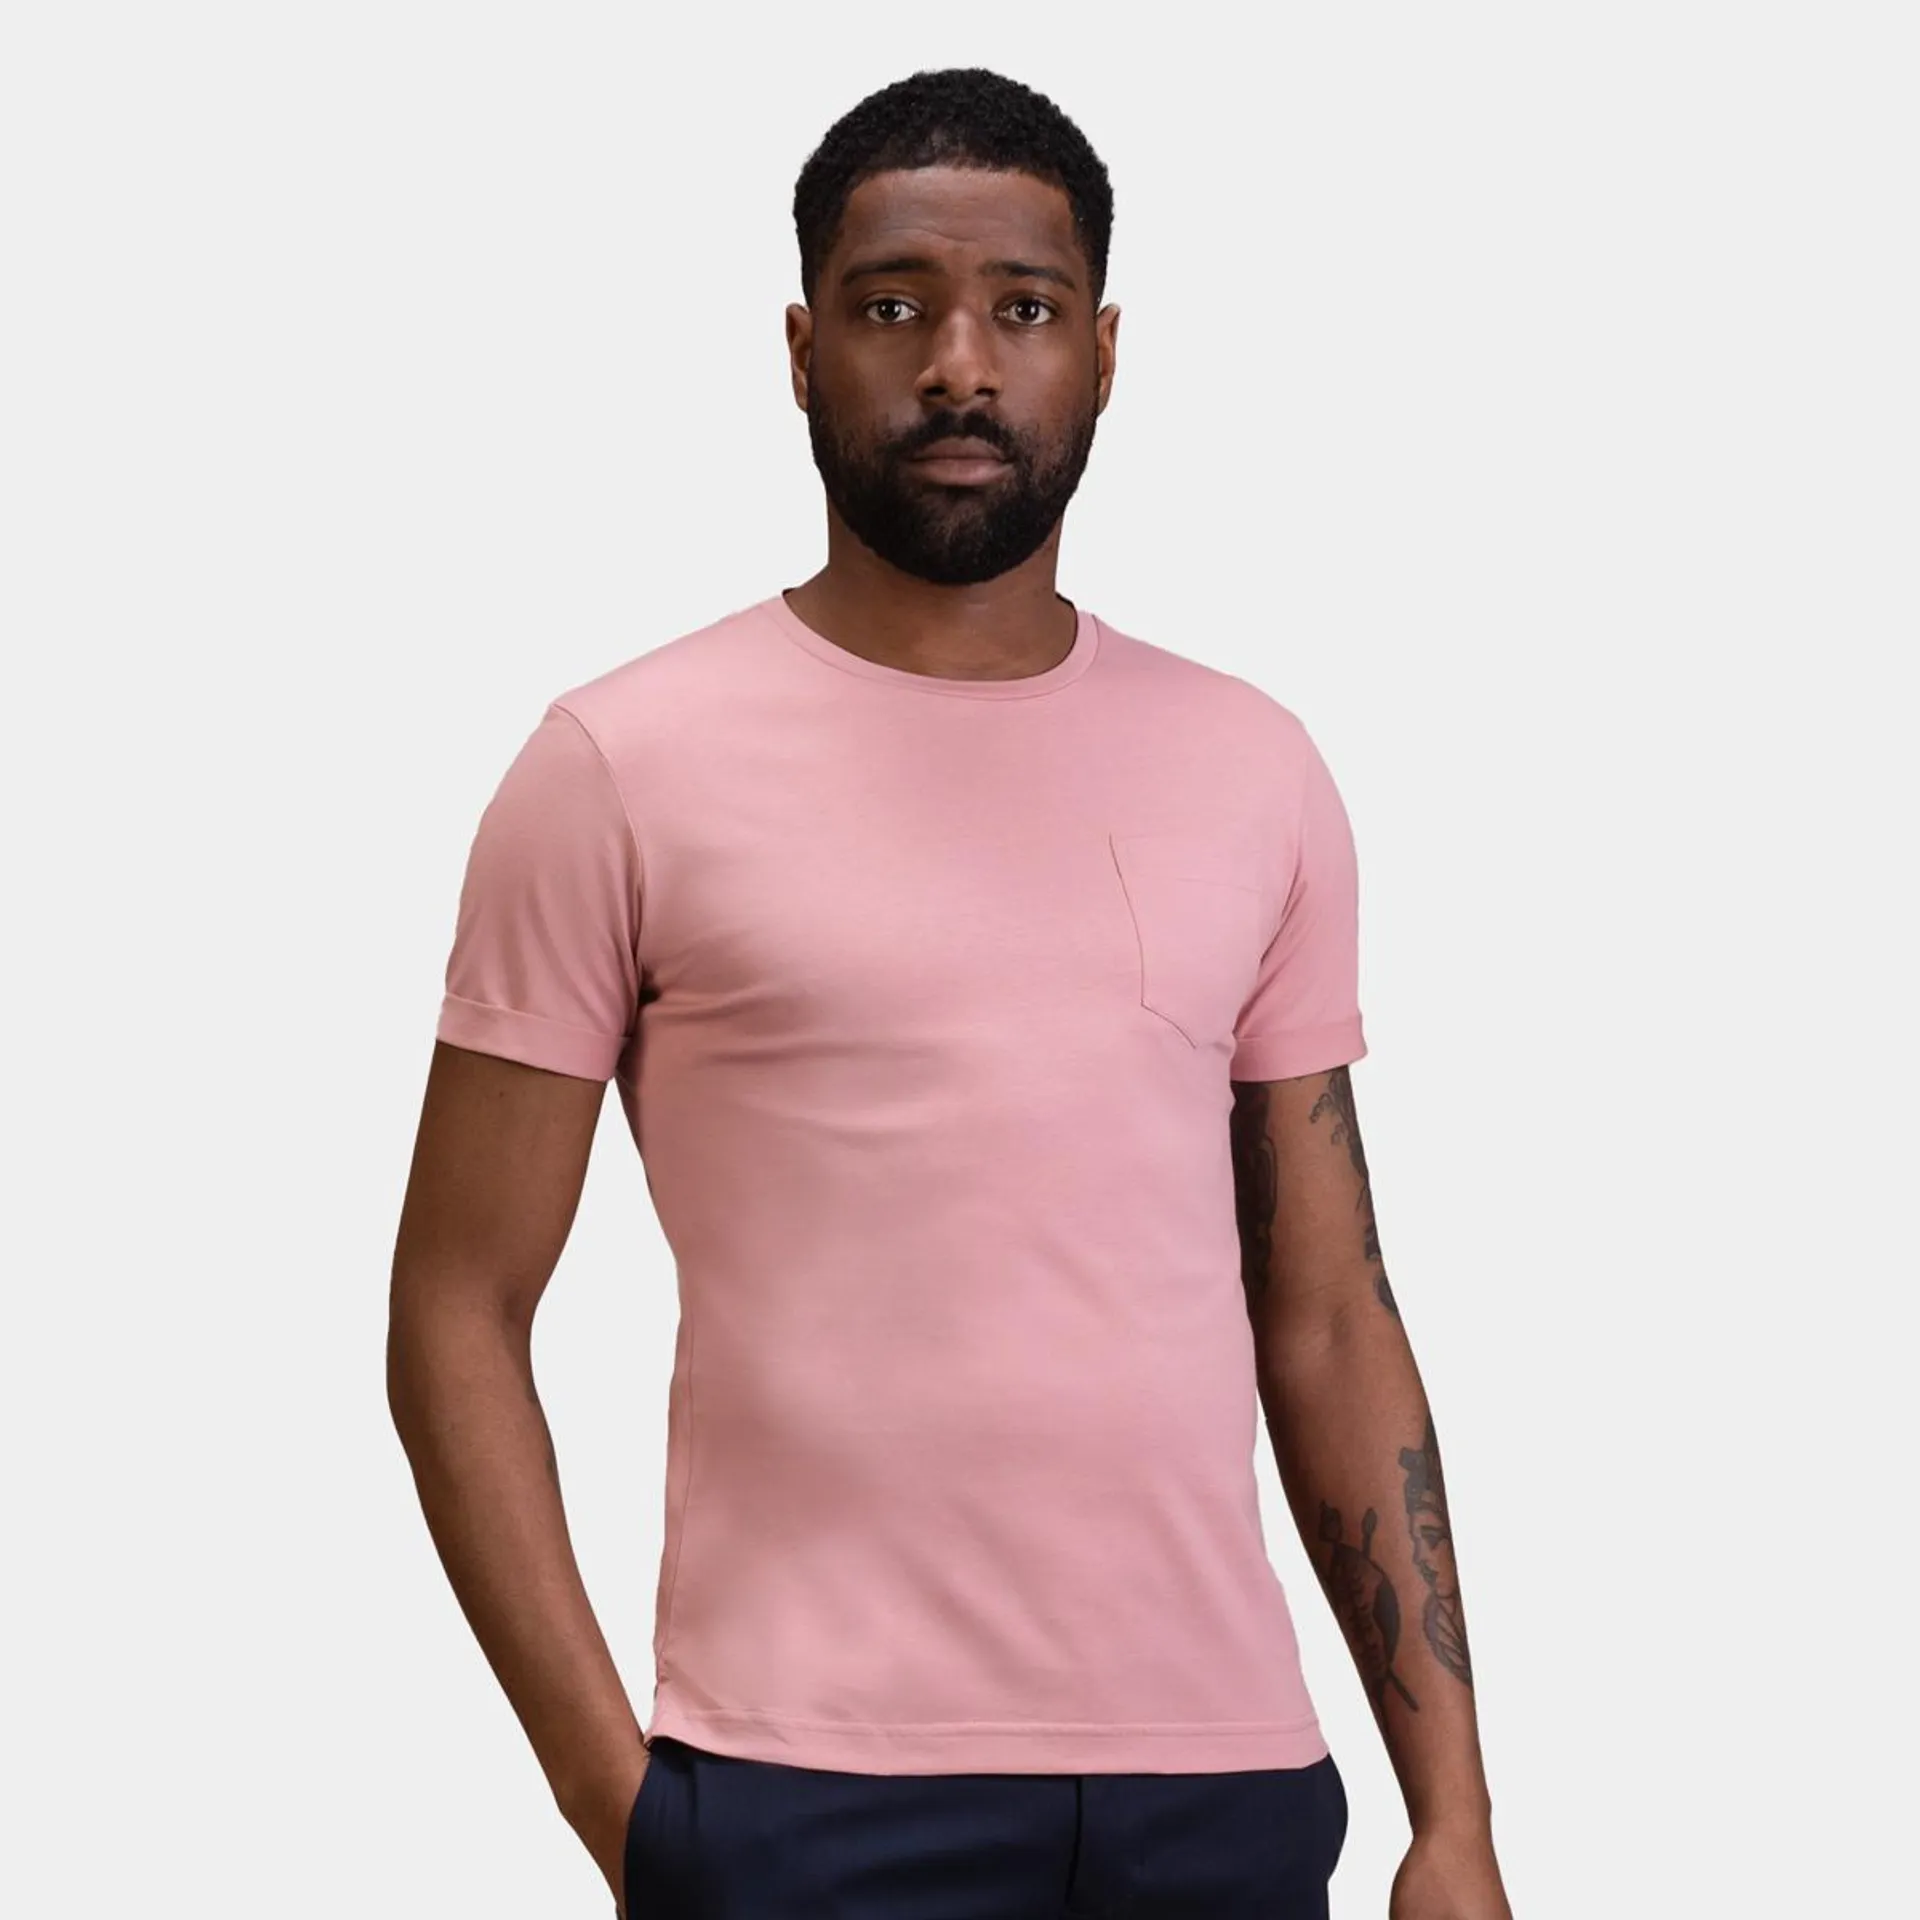 Soft pink t-shirt